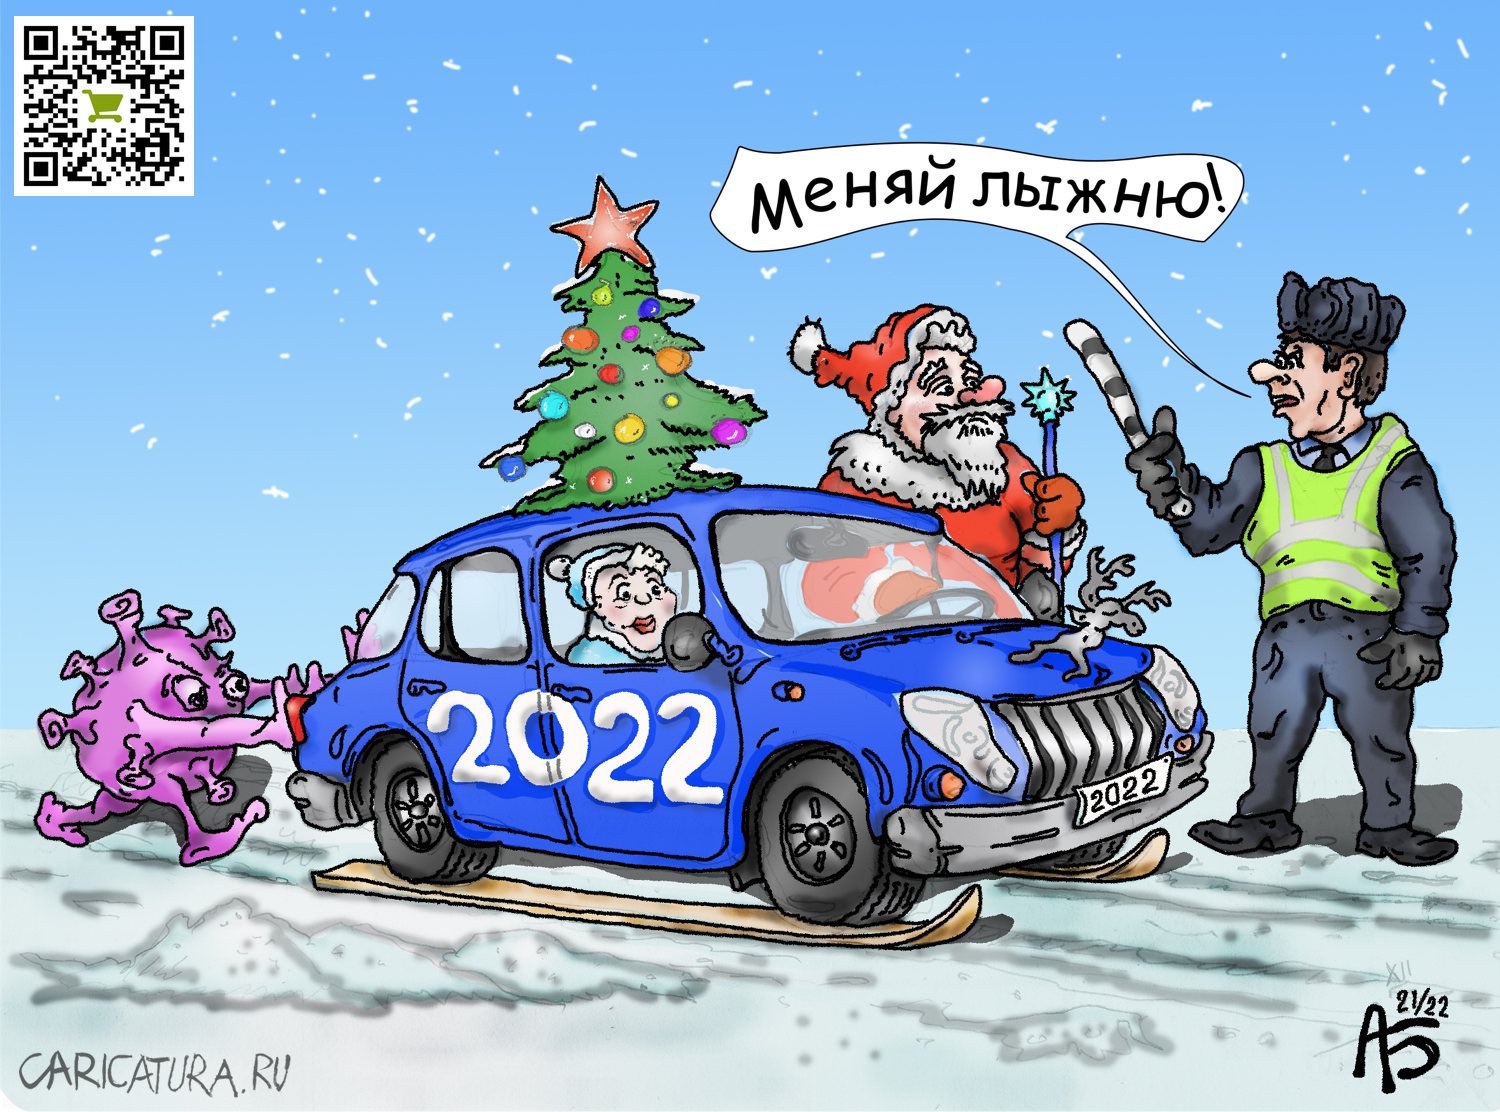 Карикатура "Меняй лыжню!", Александр Богданов